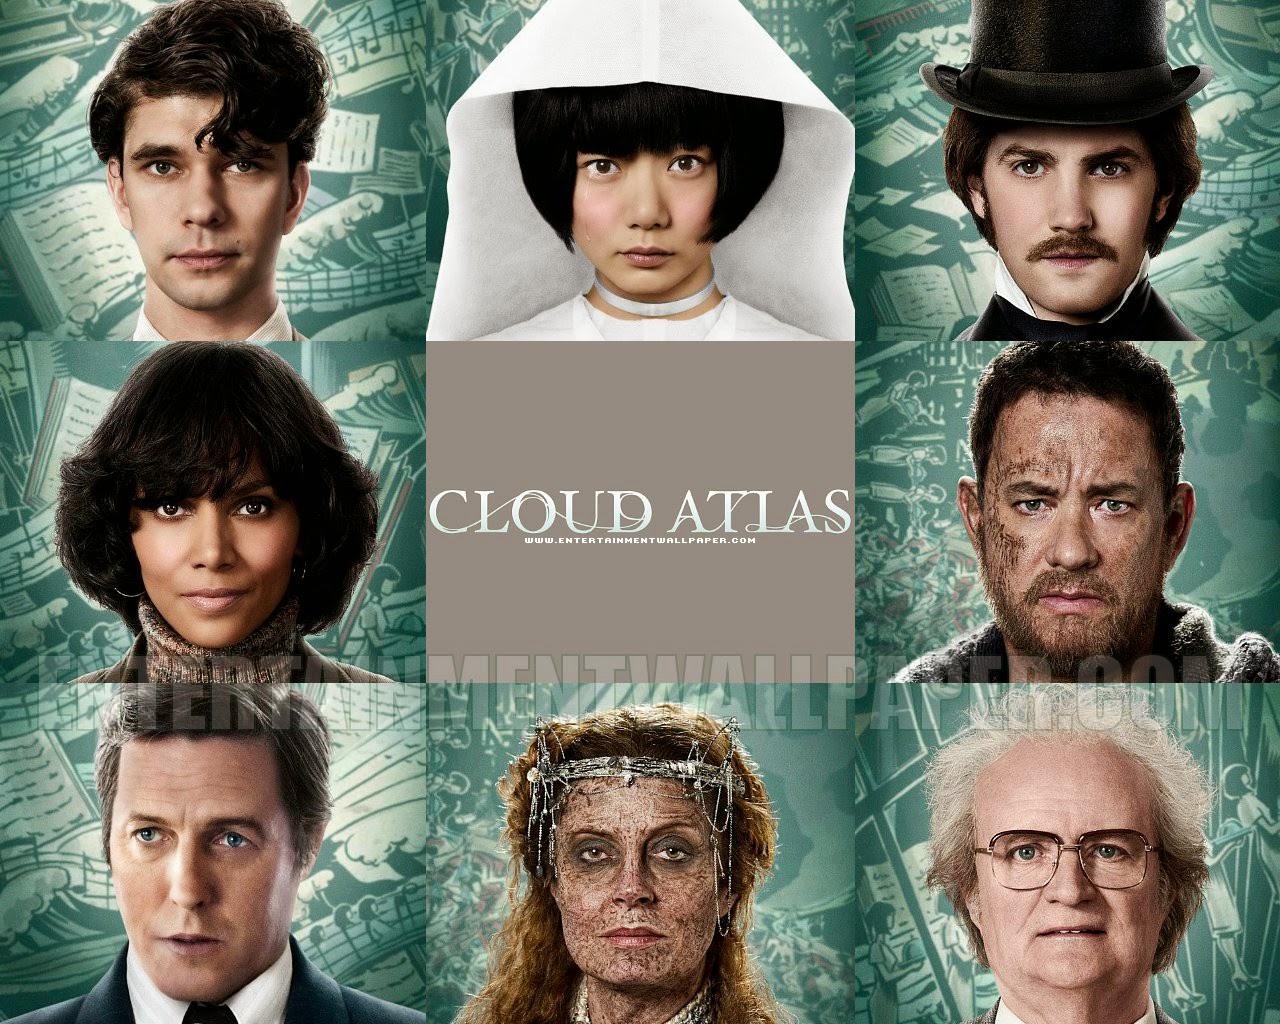 Bokhylla mi: Cloud Atlas